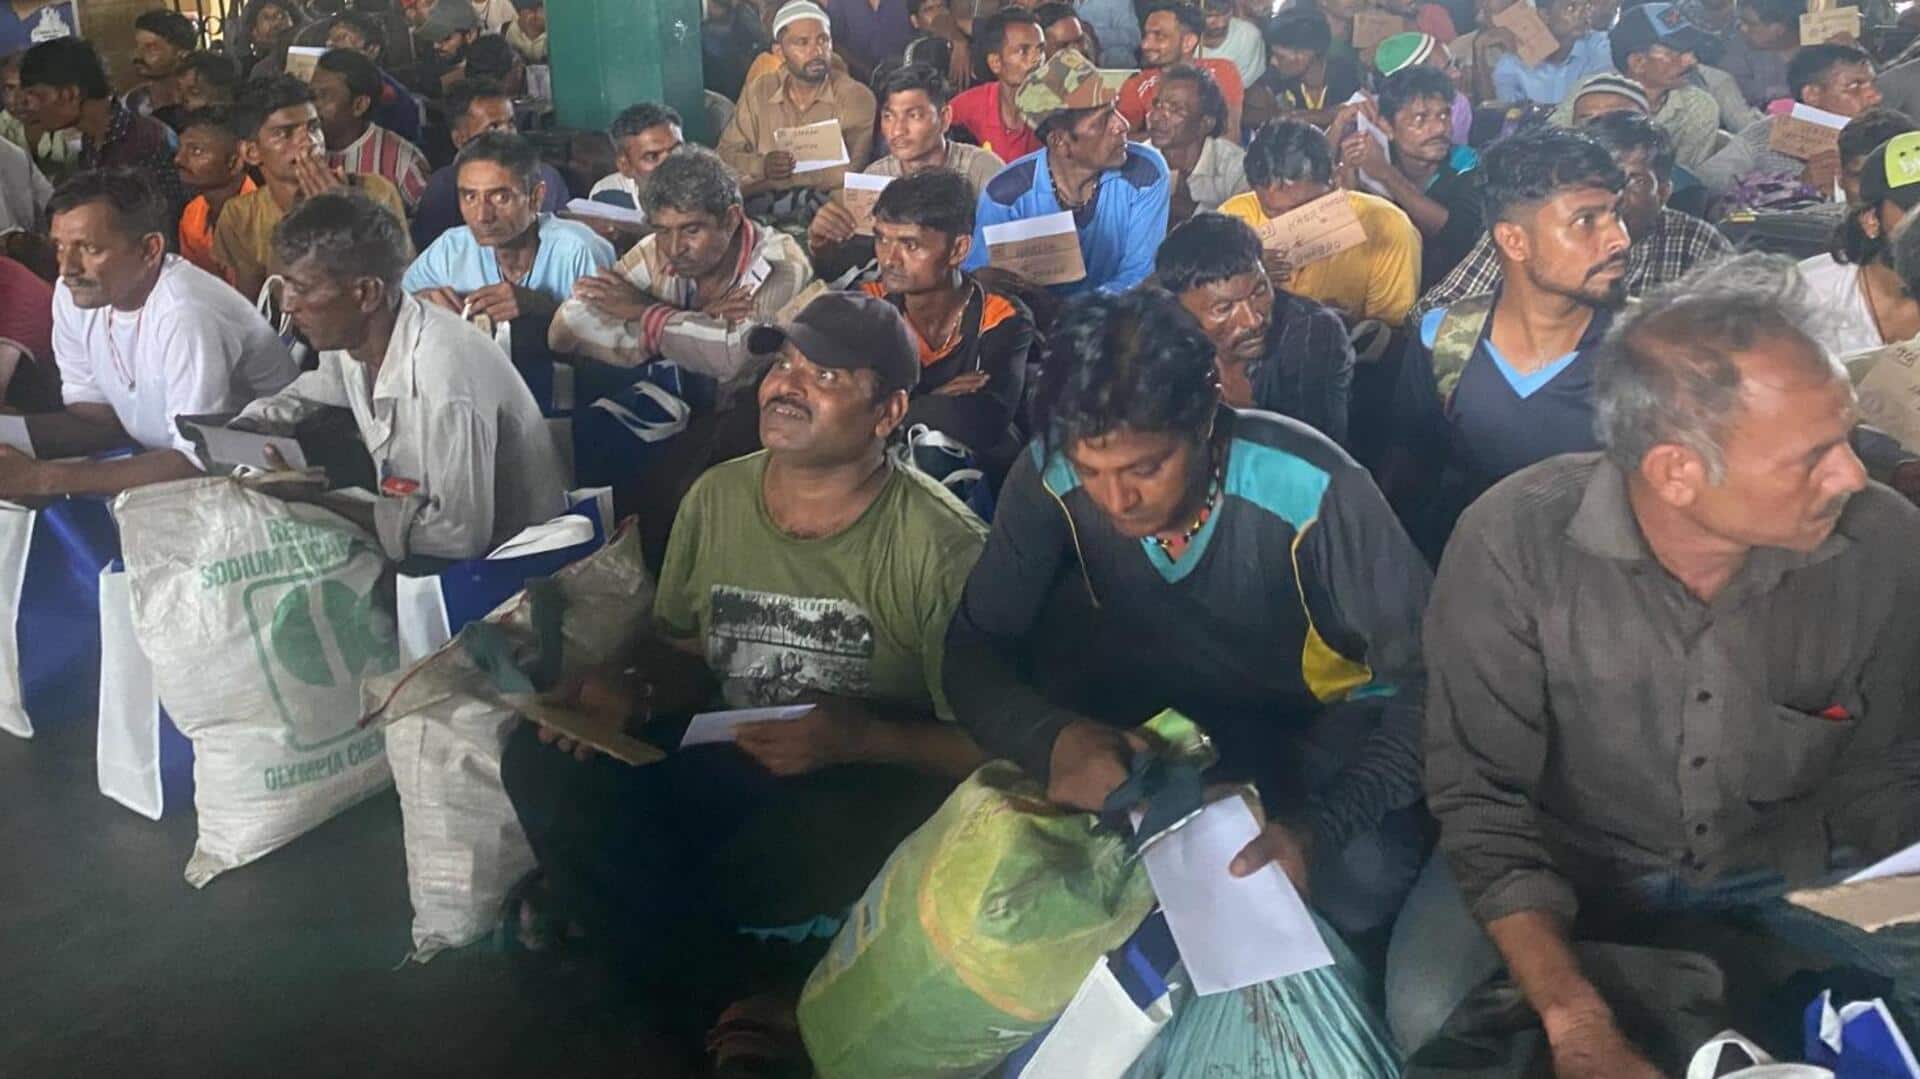 पाकिस्तान: 200 भारतीय मछुआरों और 3 कैदियों को रिहा किया जाएगा, बिलावल भुट्टो ने किया ट्वीट